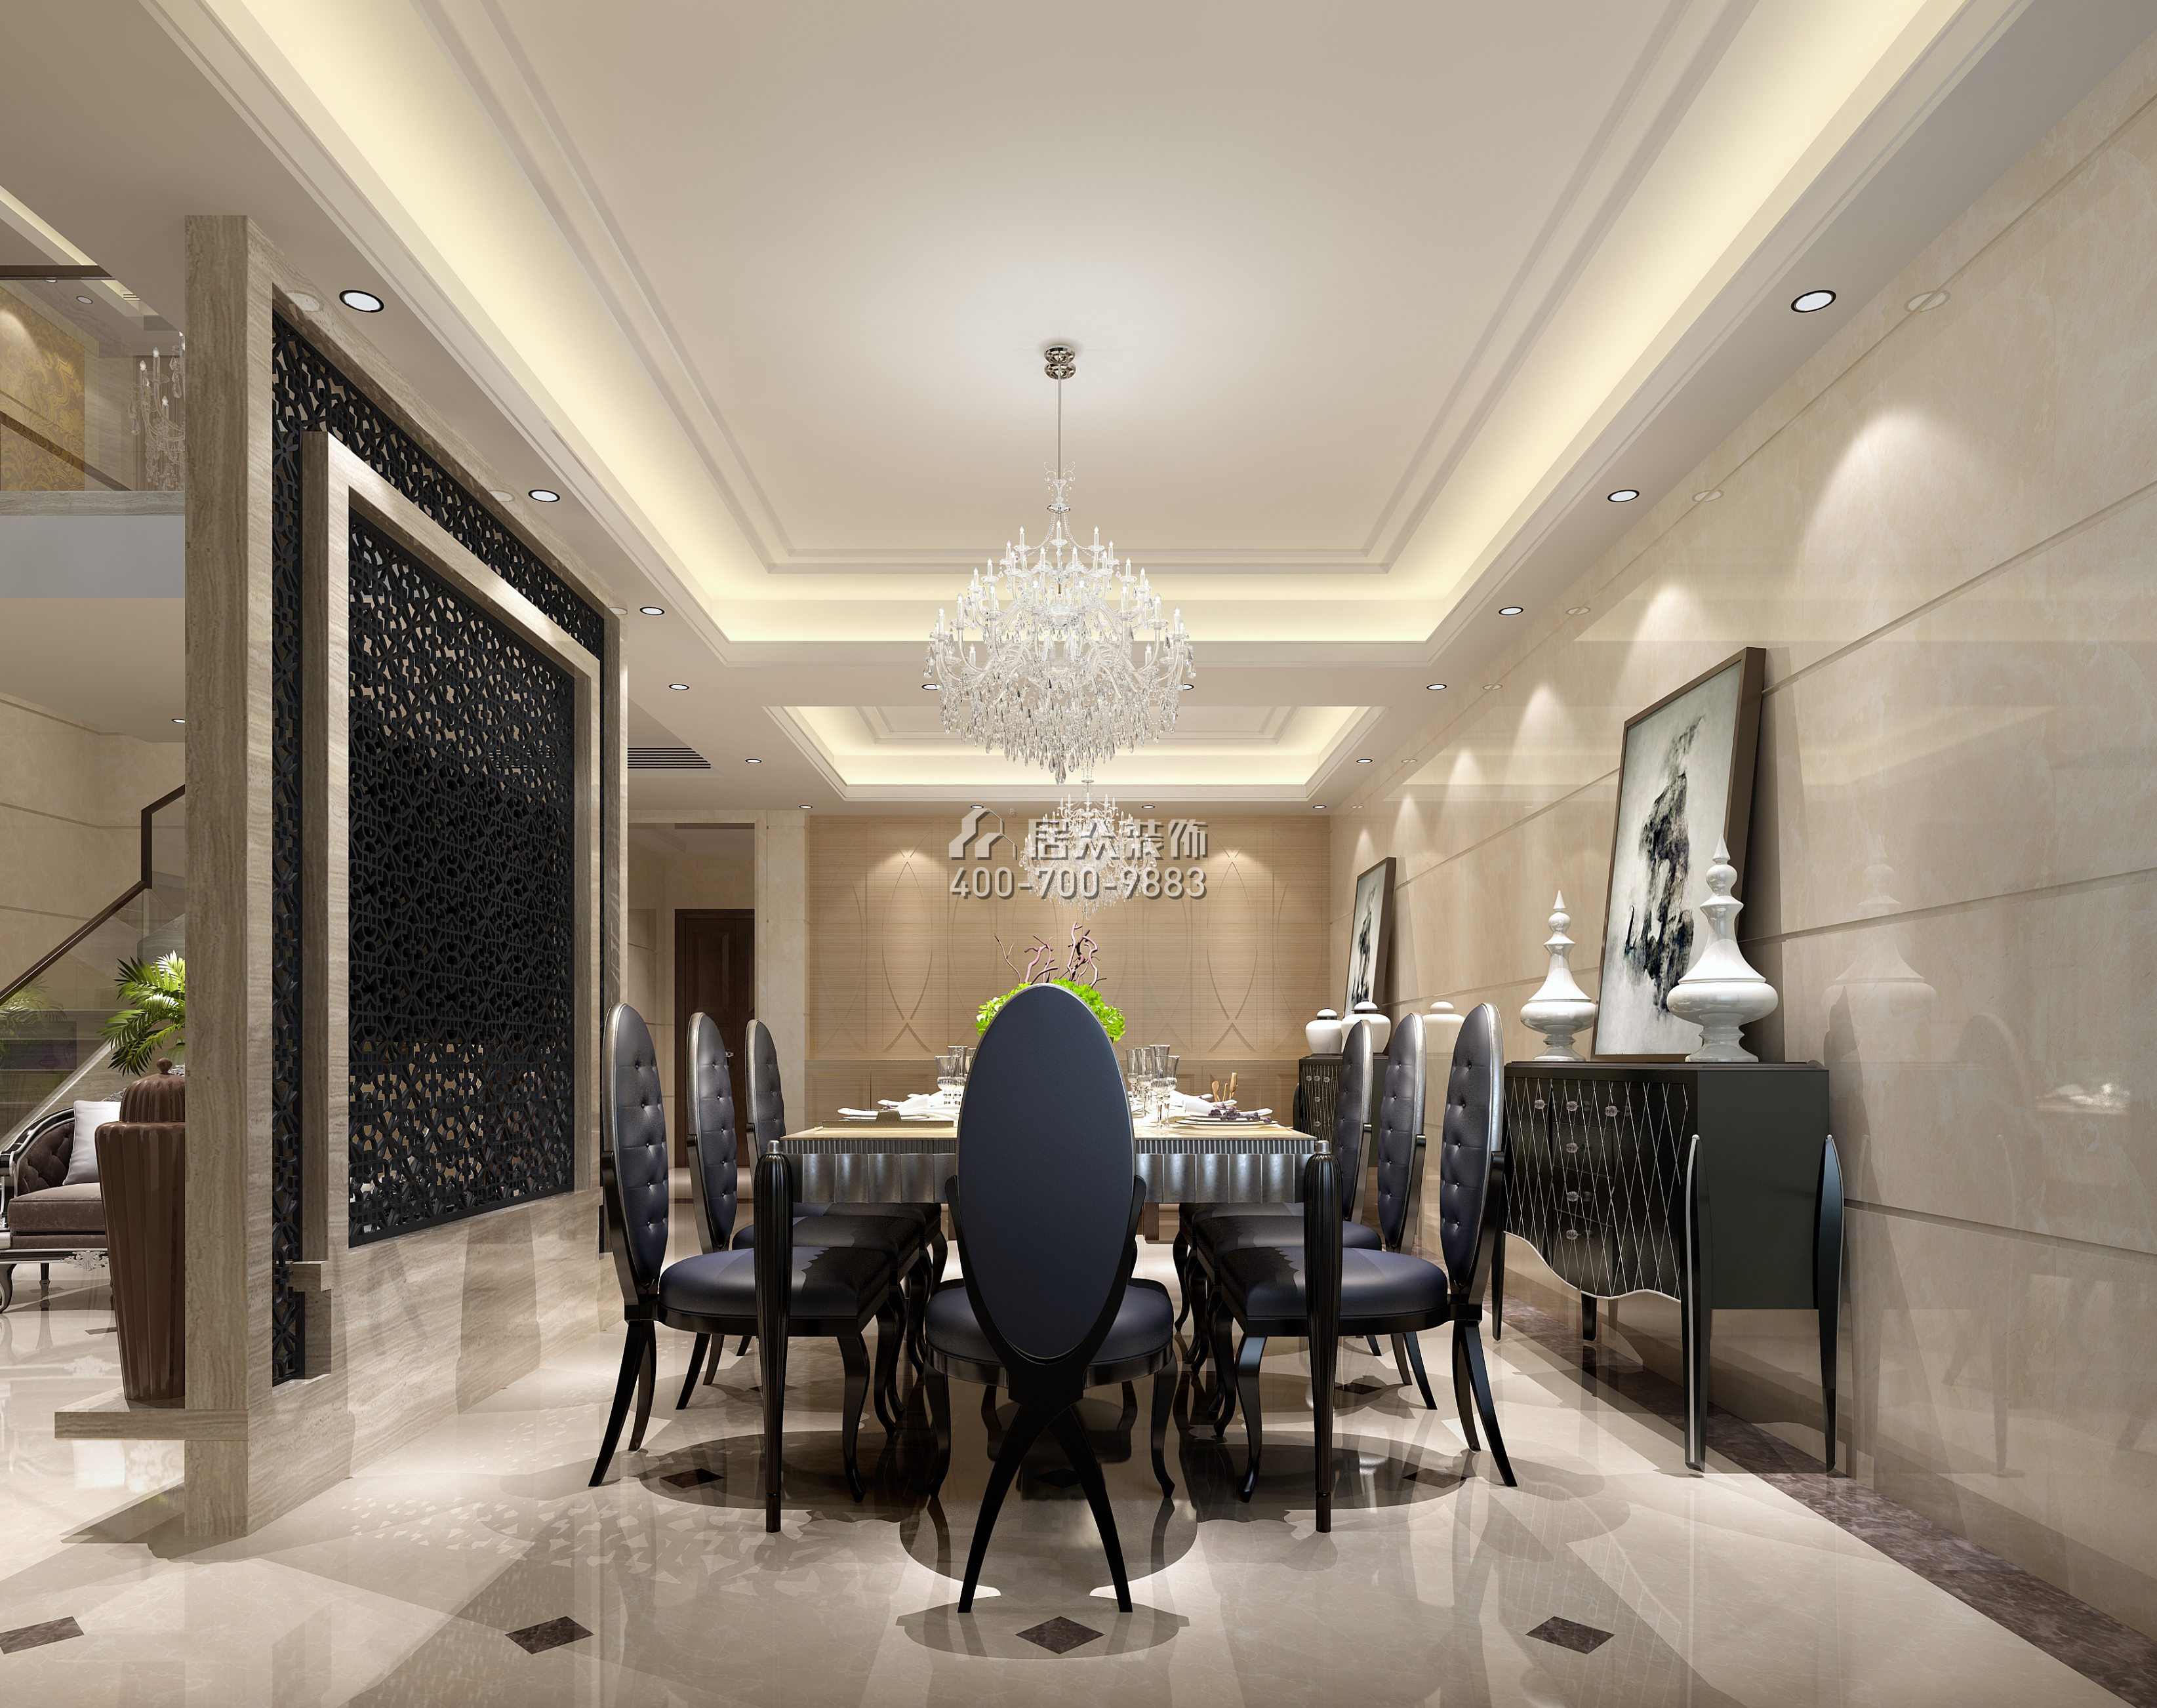 黃埔雅苑二期268平方米新古典風格復式戶型餐廳裝修效果圖